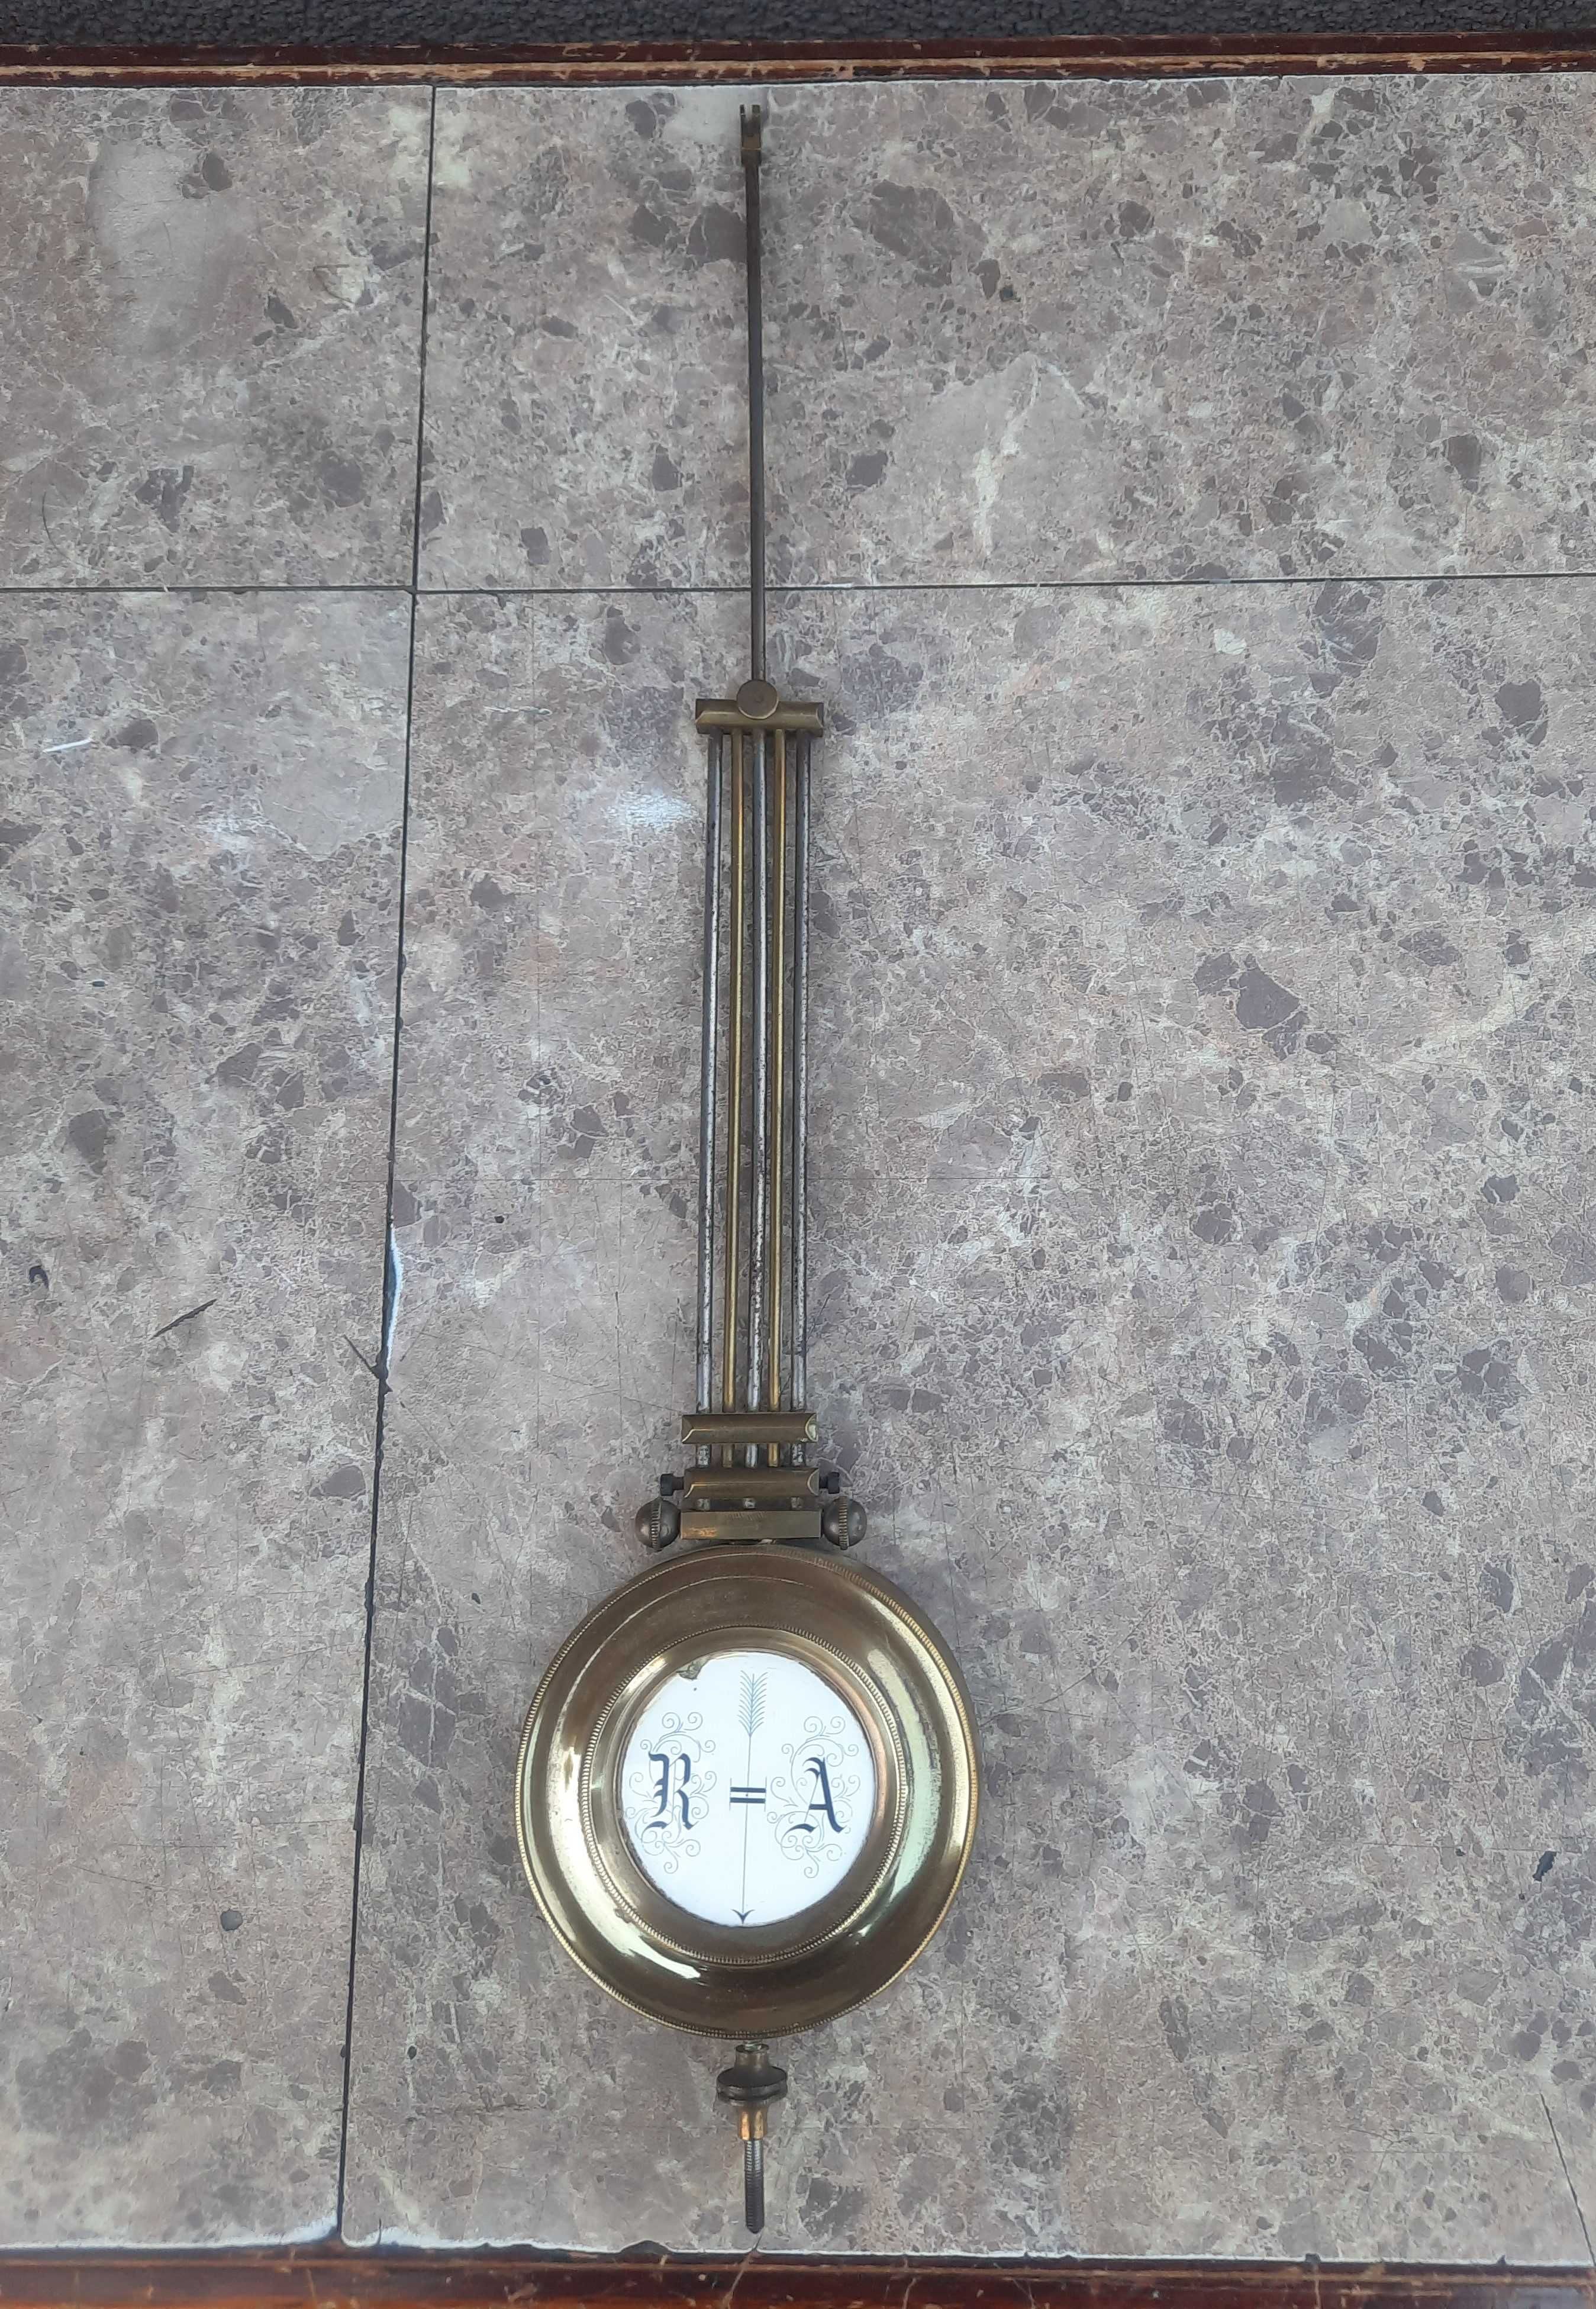 440 Wahadło rusztowe zegara ściennego Lenzkirch 8cm dł 40cm